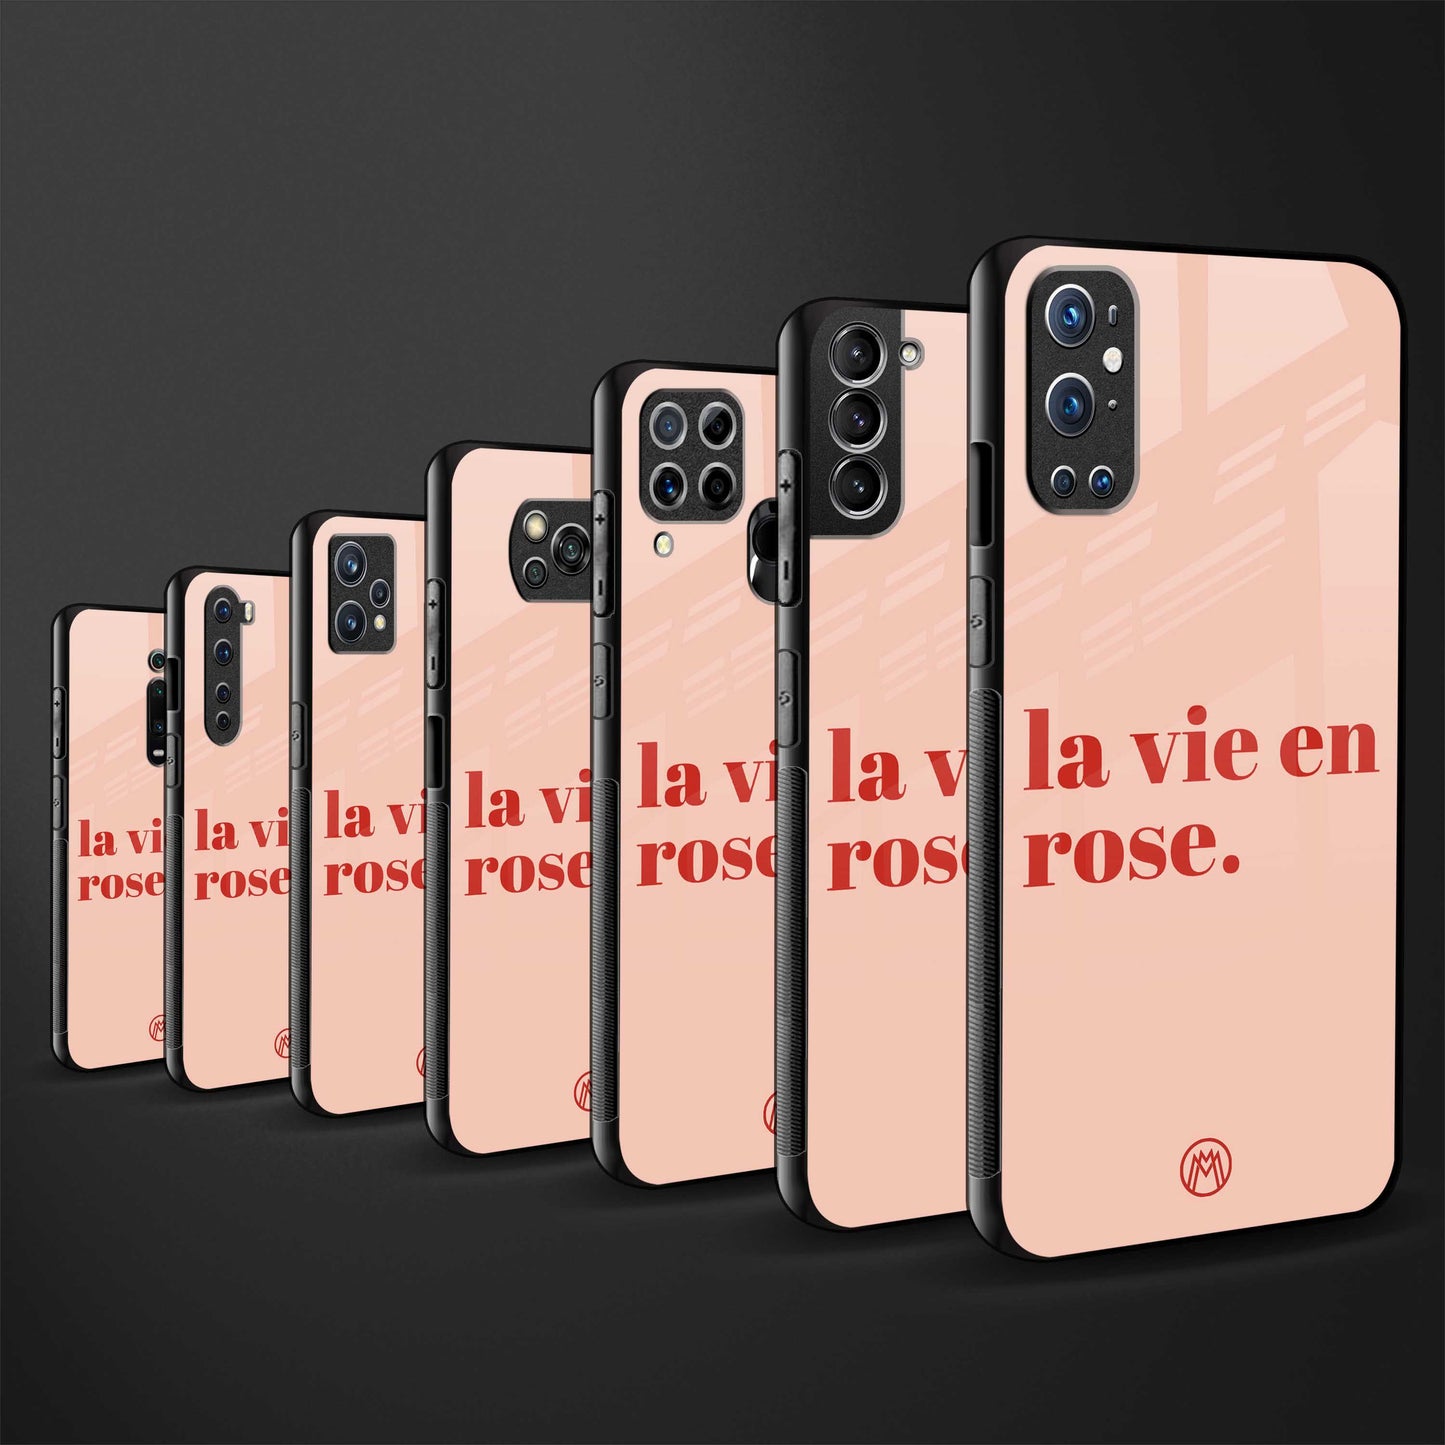 la vie en rose quote back phone cover | glass case for vivo y16